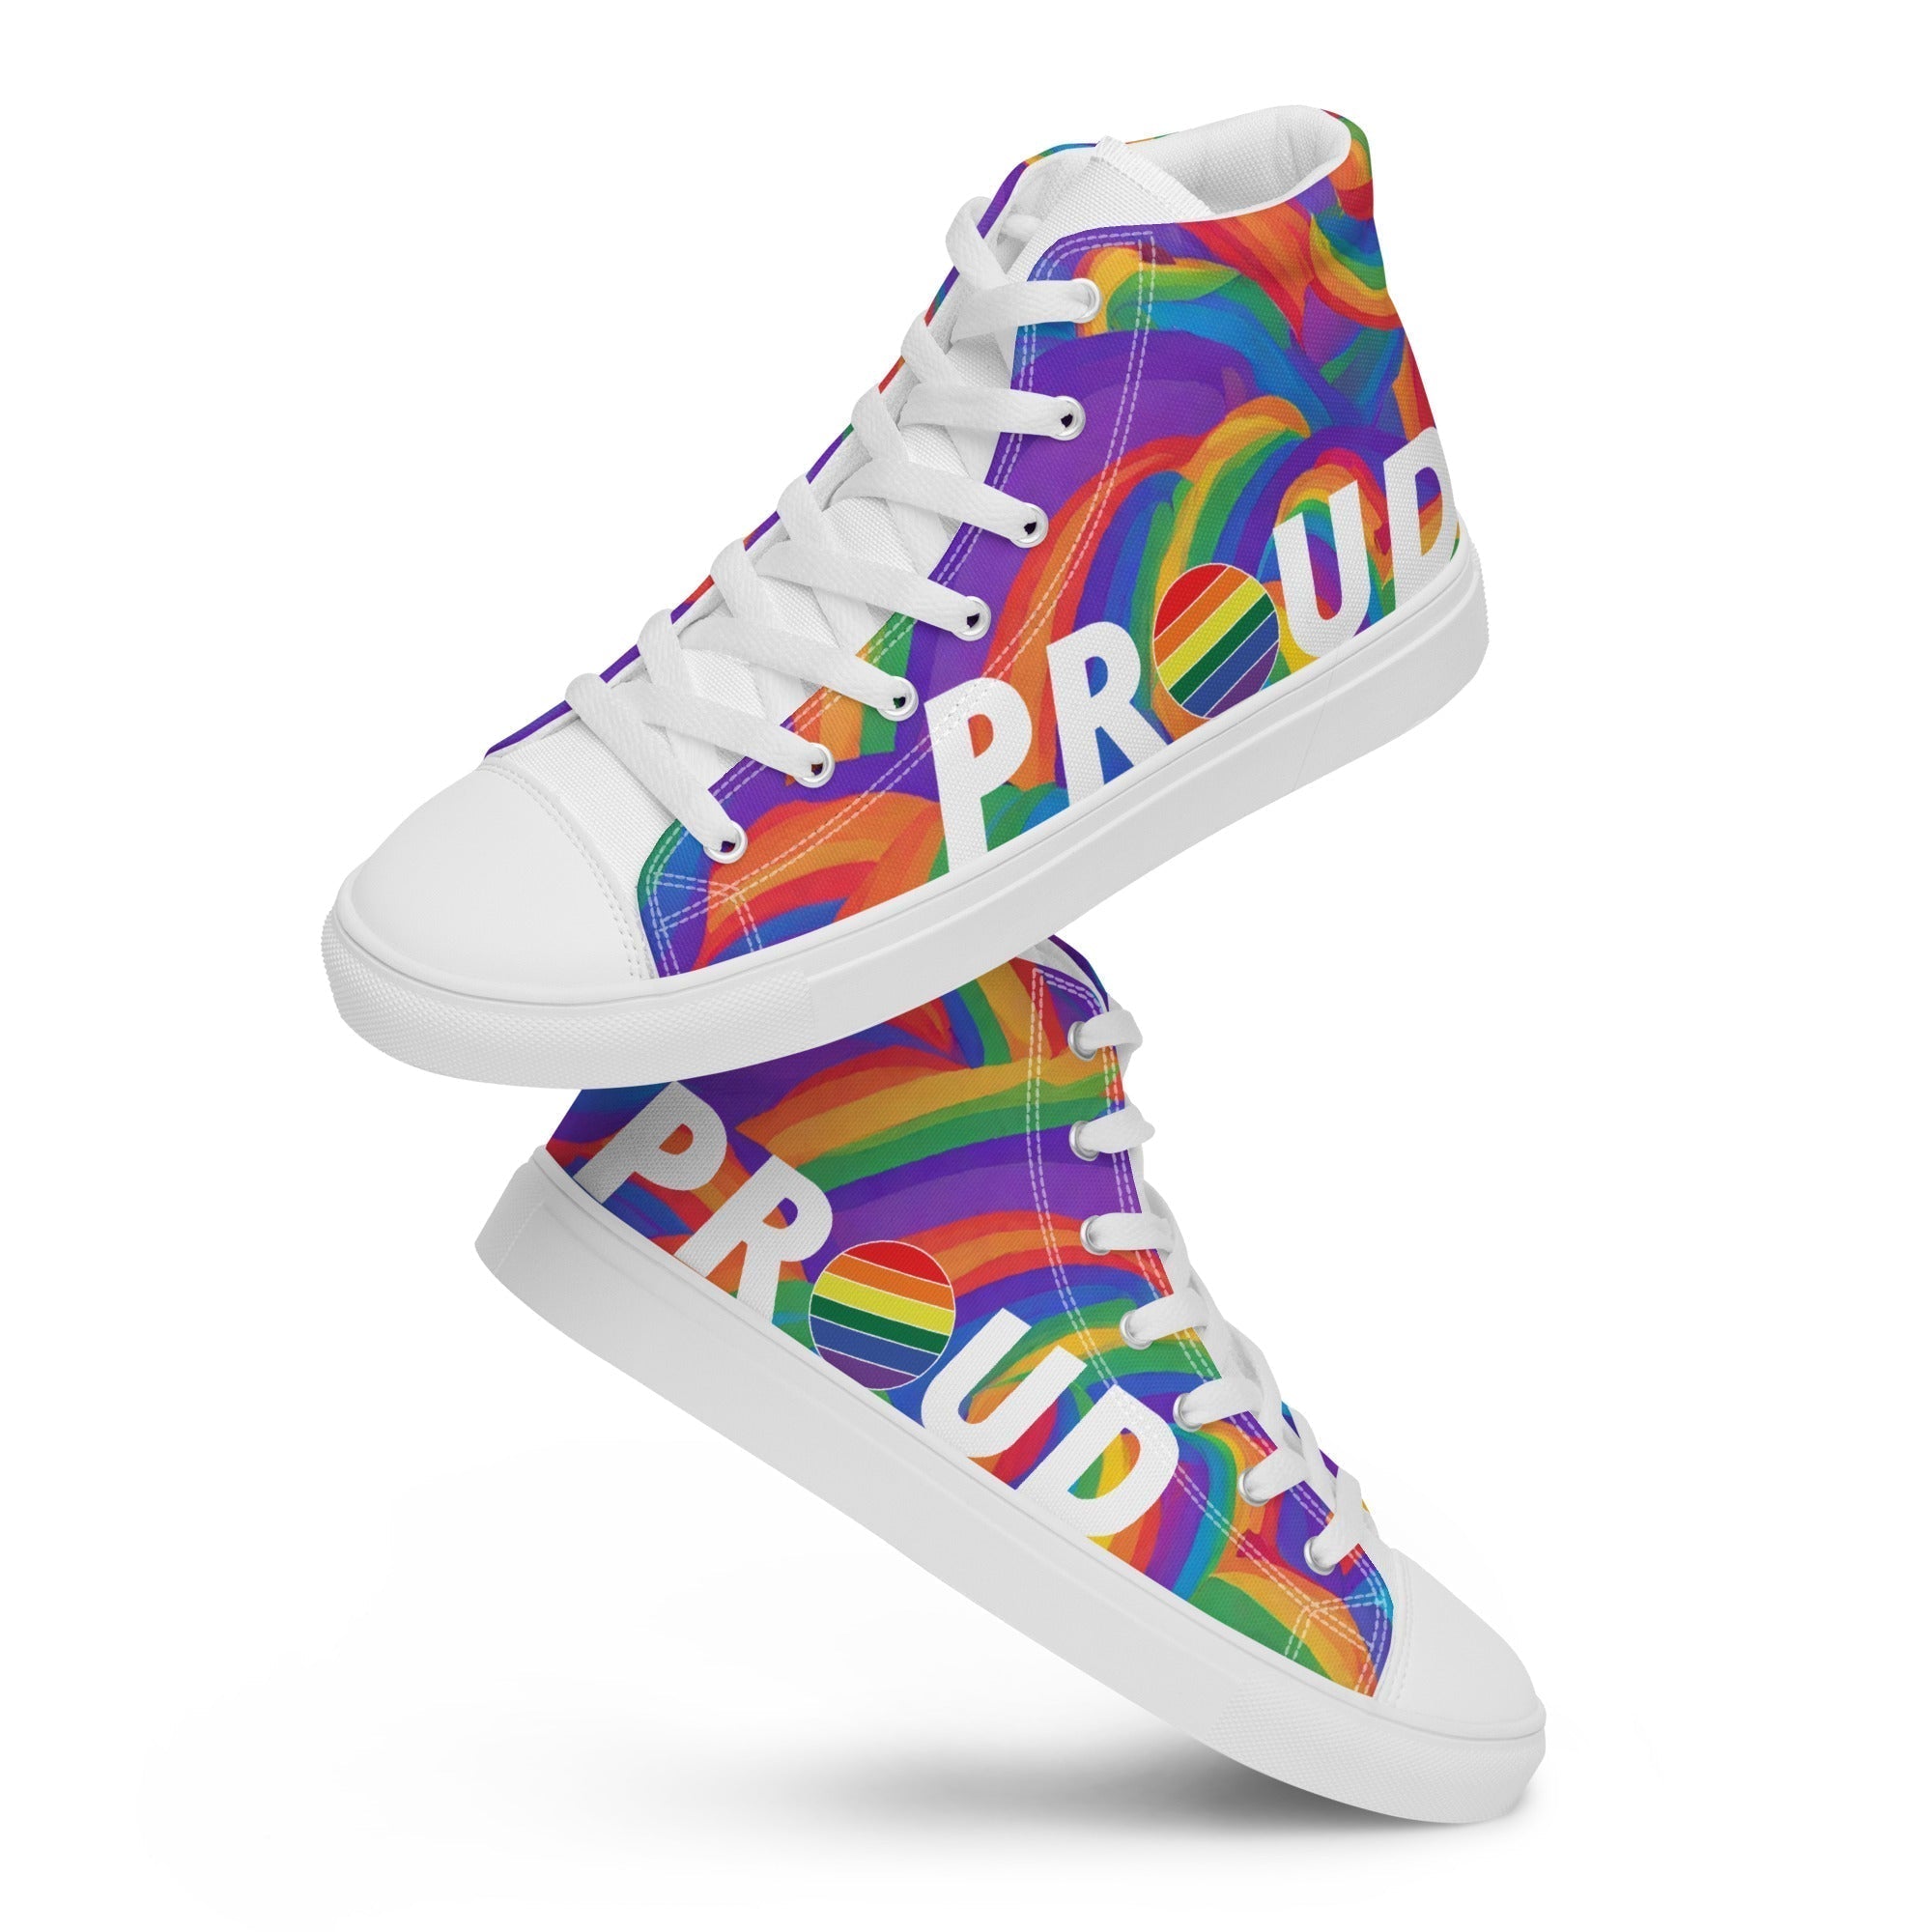 PROUD Pride shoes